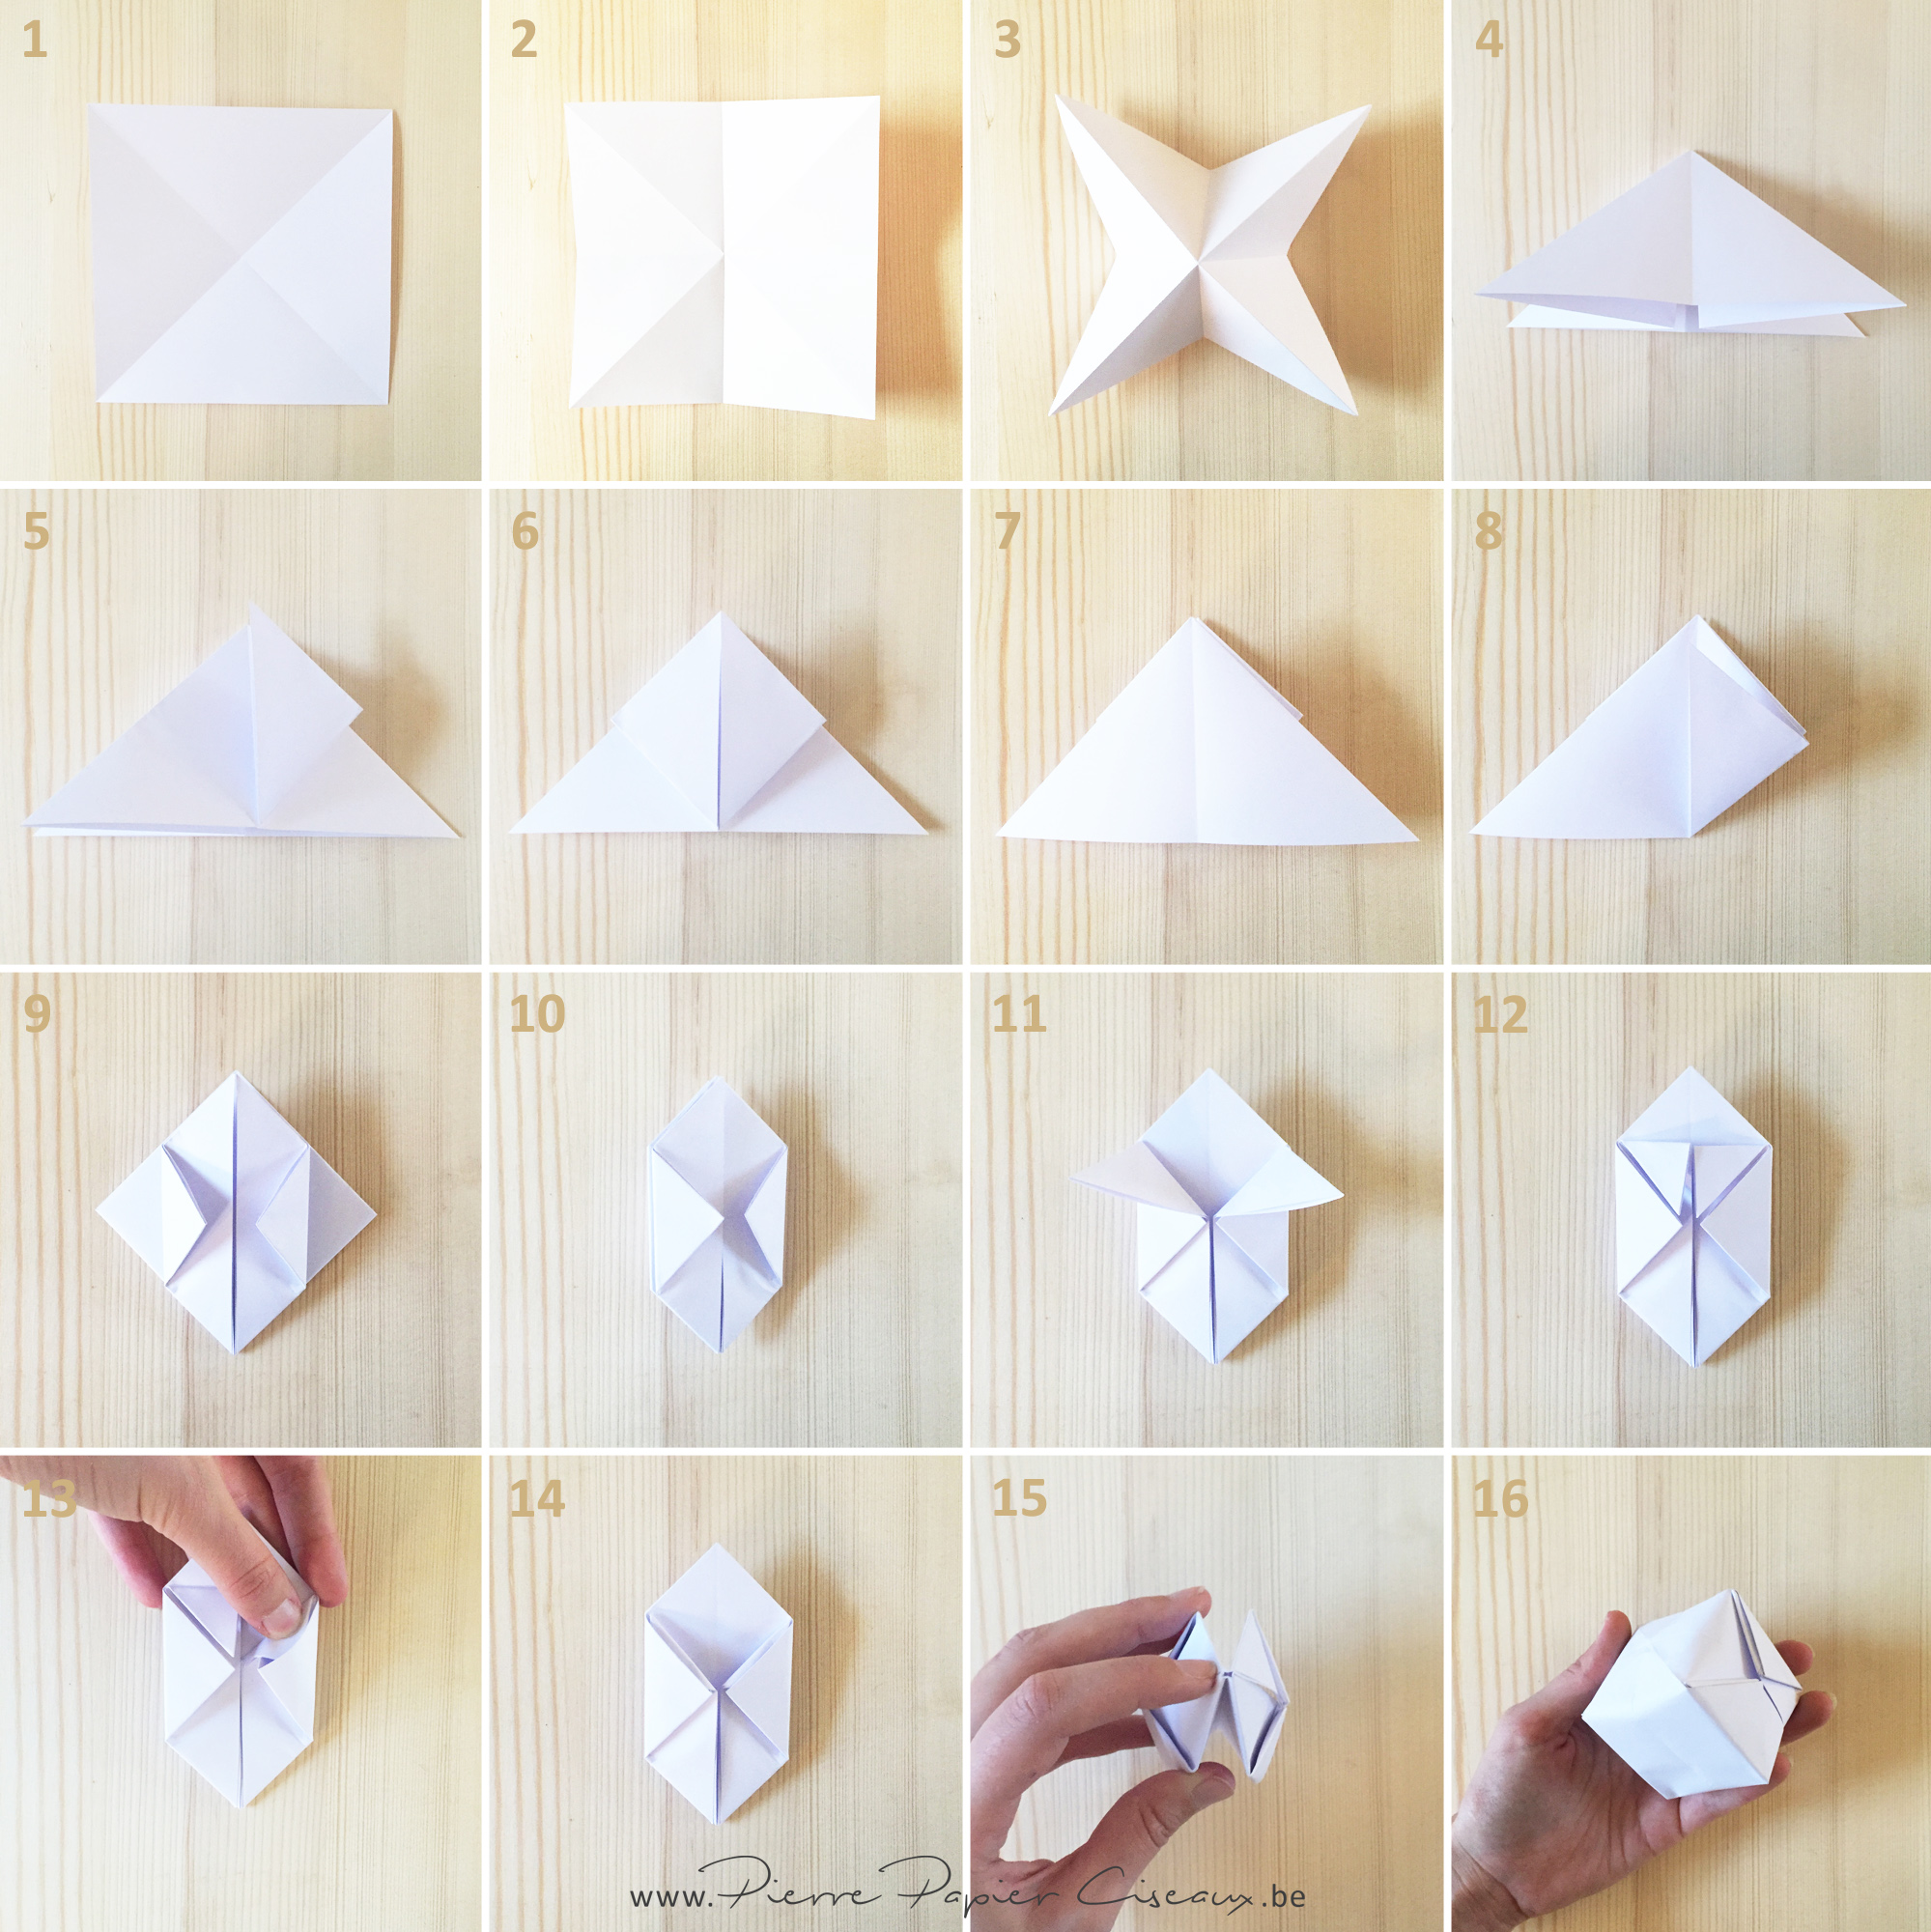 Origami Boule et Bill - Bibliothèques de Martigues